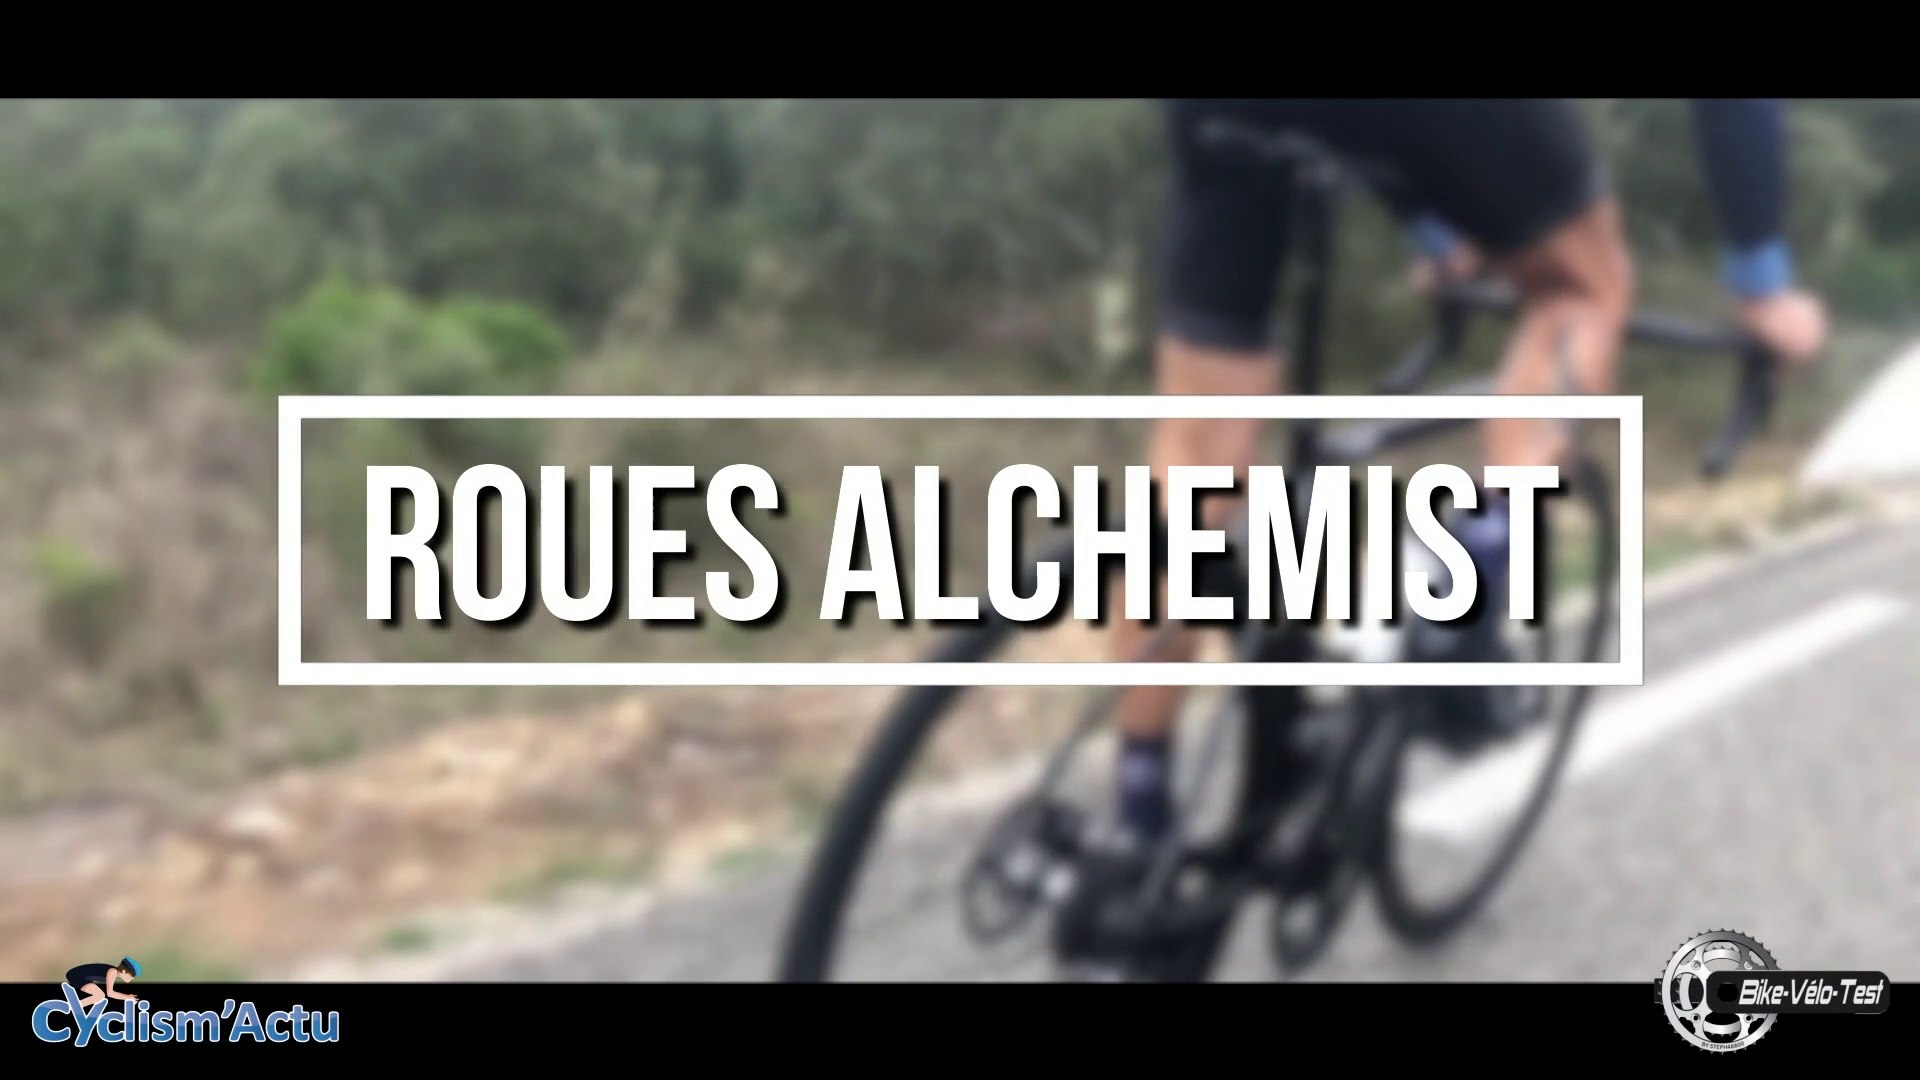 Bike Vélo Test - Cyclism'Actu a testé les roues Alchemist - Vidéo  Dailymotion